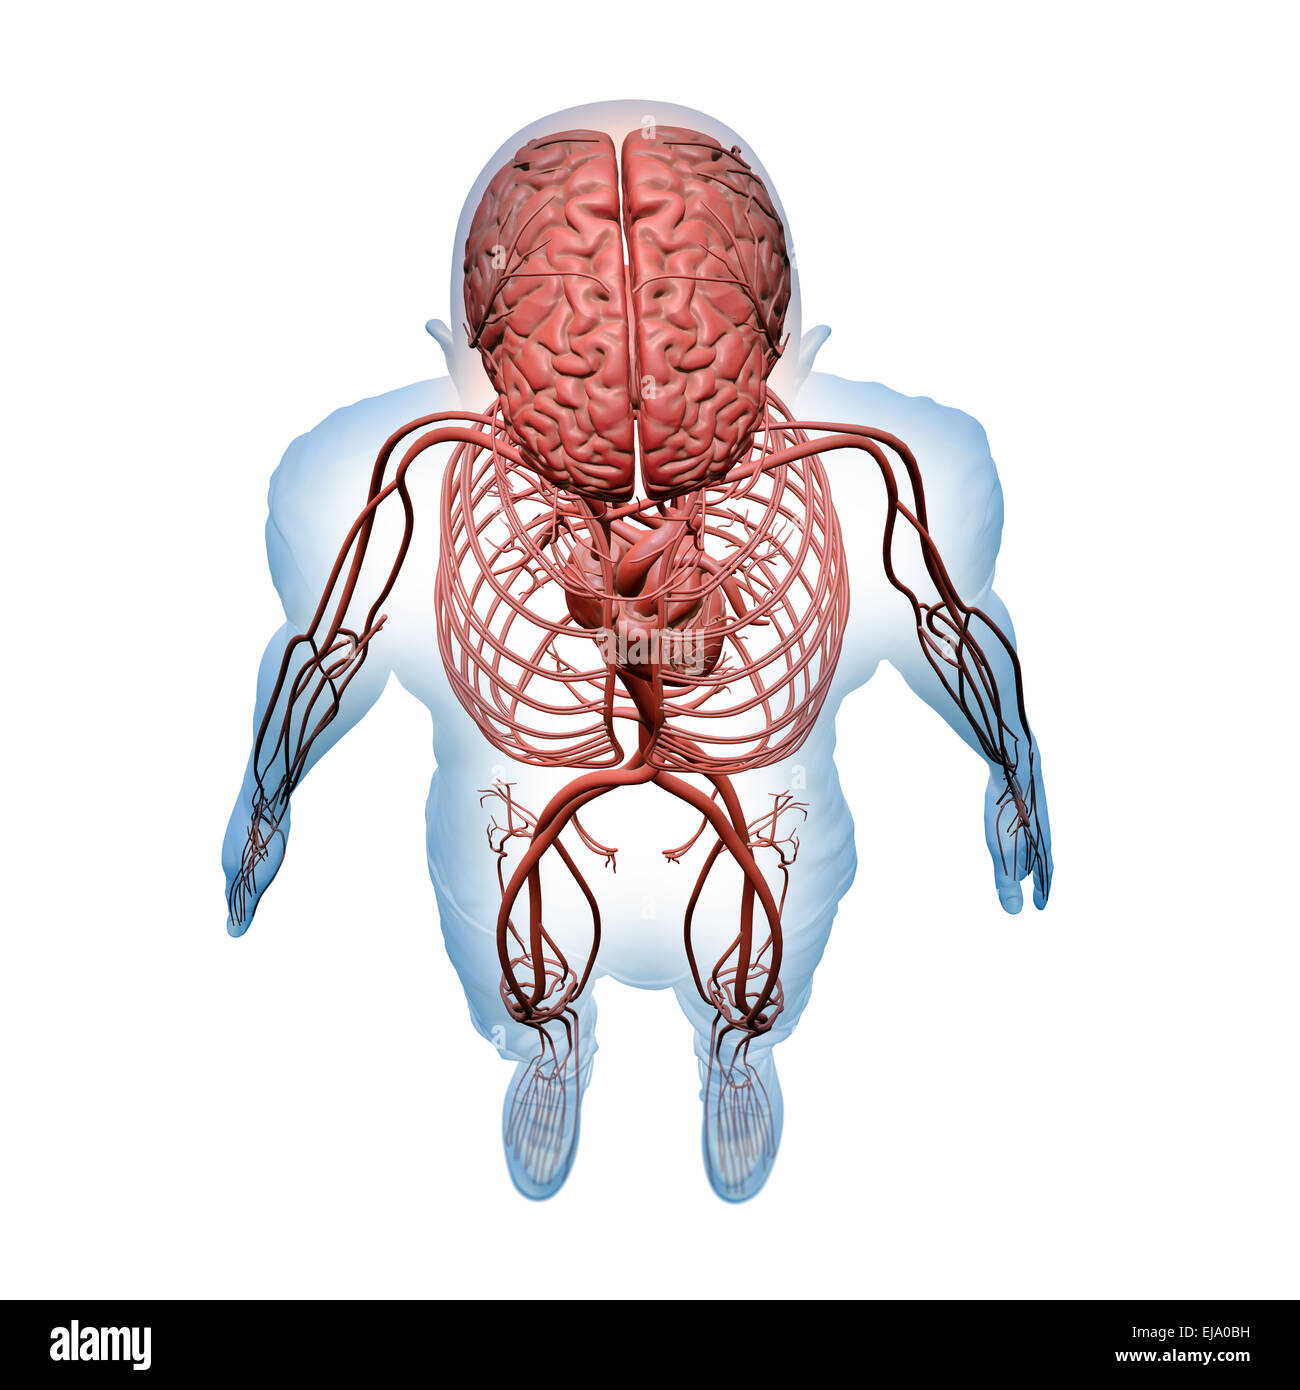 Anatomie humaine - illustration des systèmes circulatoires et nerveux central Banque D'Images